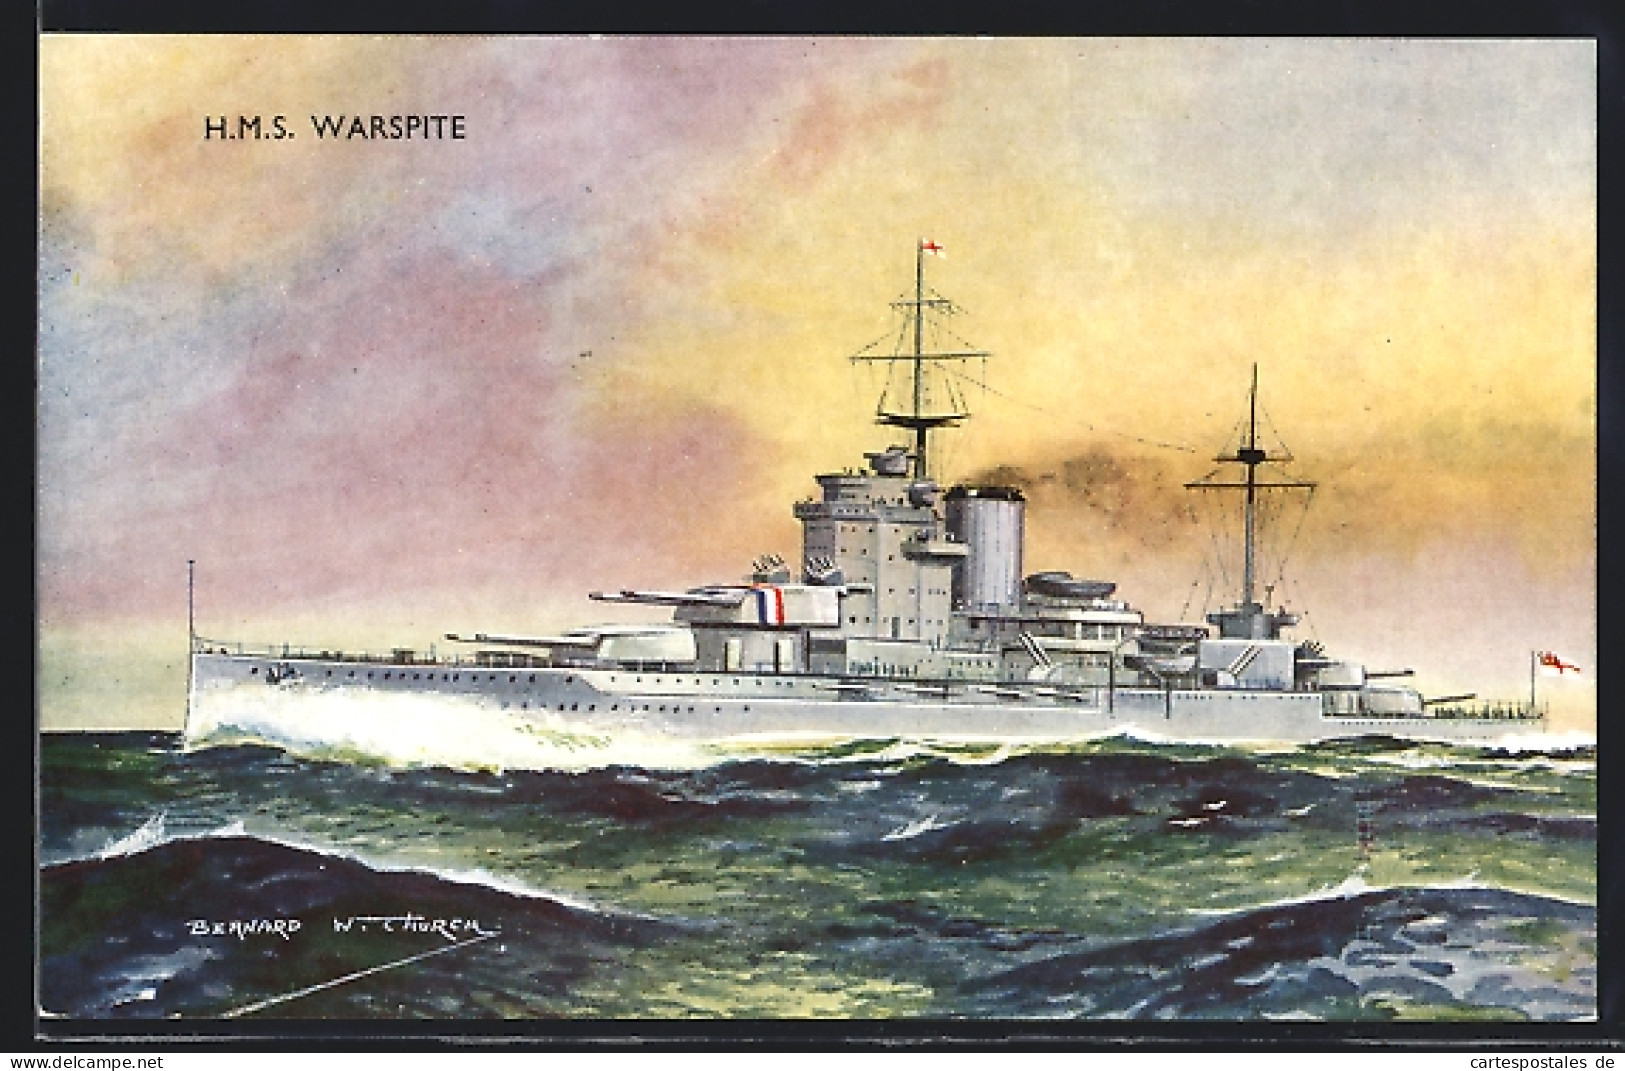 Artist's Pc Bernard W. Church: Britisches Schlachtschiff SMS Warspite  - Warships